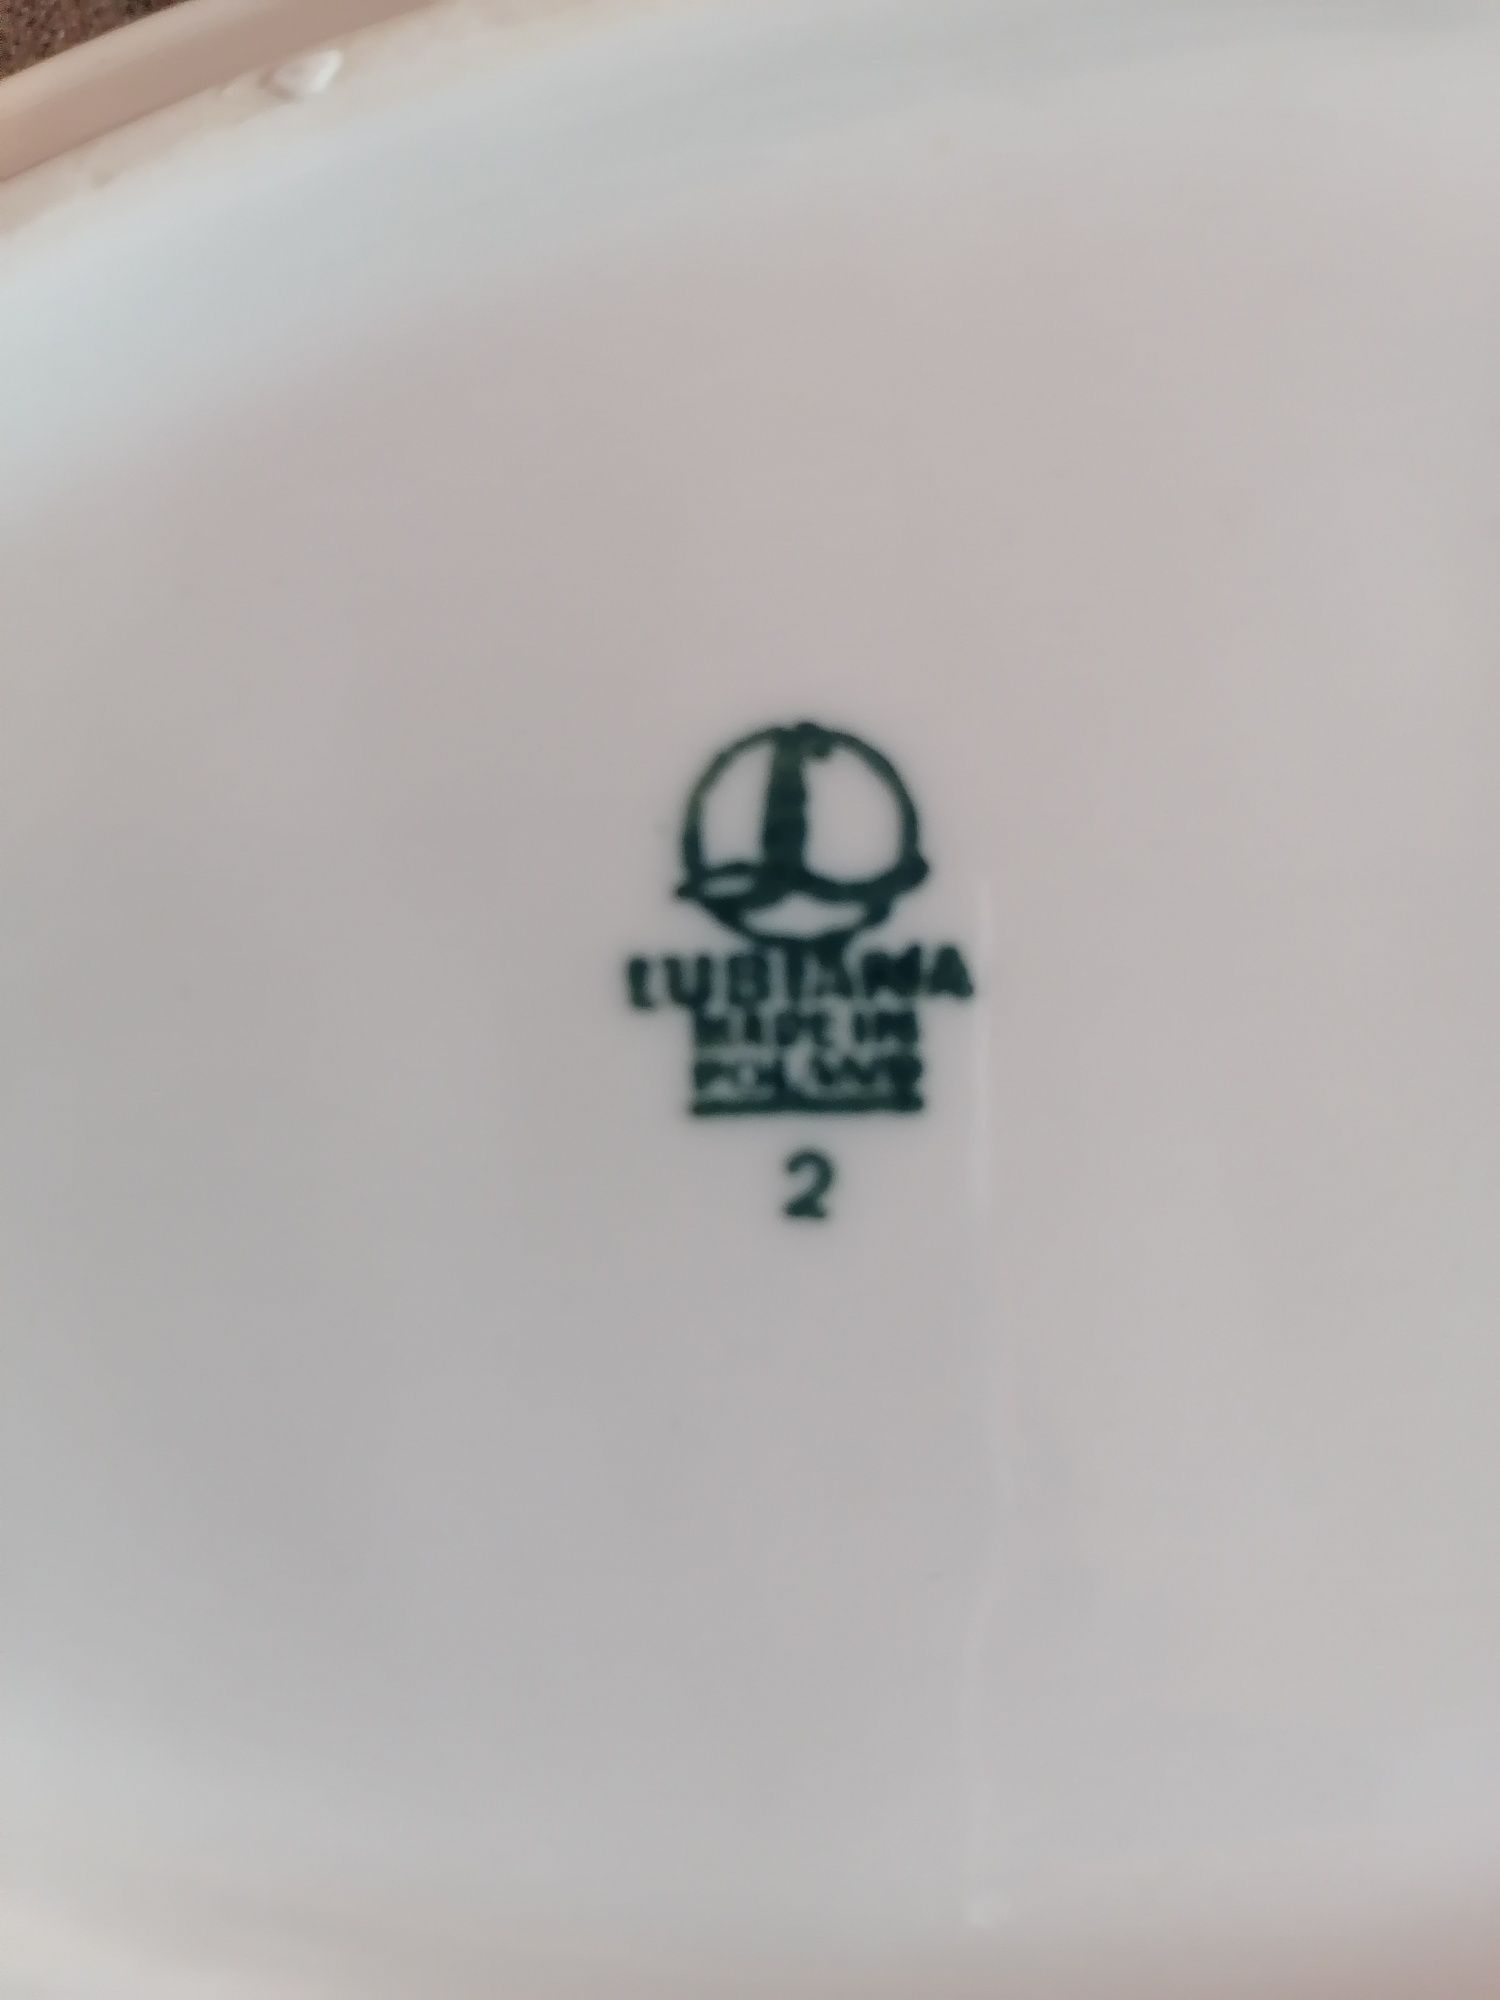 Półmisek mały Lubiana- logo Społem. Szerokość 14 cm, długość 24 cm.